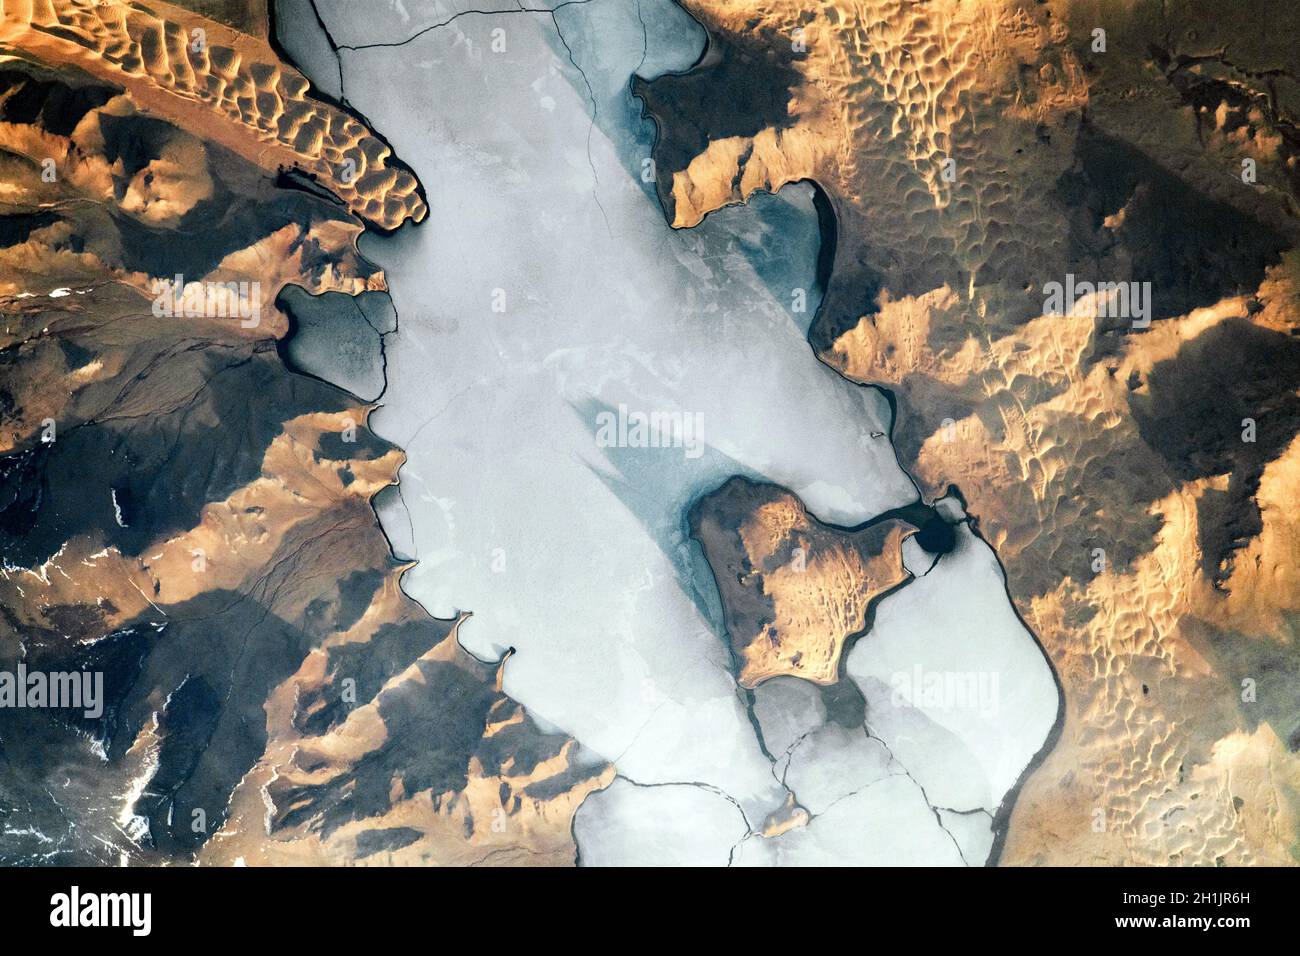 Immagini Landsat della Terra: Le ombre accentuano la topografia dentro e intorno Ulaagchinii Khar Nuur (lago) in Mongolia in questa foto dell'alba scattata dalla Stazione spaziale Internazionale (ISS). Nota le grandi e piccole isole Avgash. Le crepe permeano la superficie ghiacciata del lago e le dune costeggiano la riva. La superficie ghiacciata fredda e piatta contrasta con le onde ondulate e distintive delle dune di sabbia. Una versione ottimizzata e potenziata digitalmente di un'immagine NASA / credito NASA Foto Stock